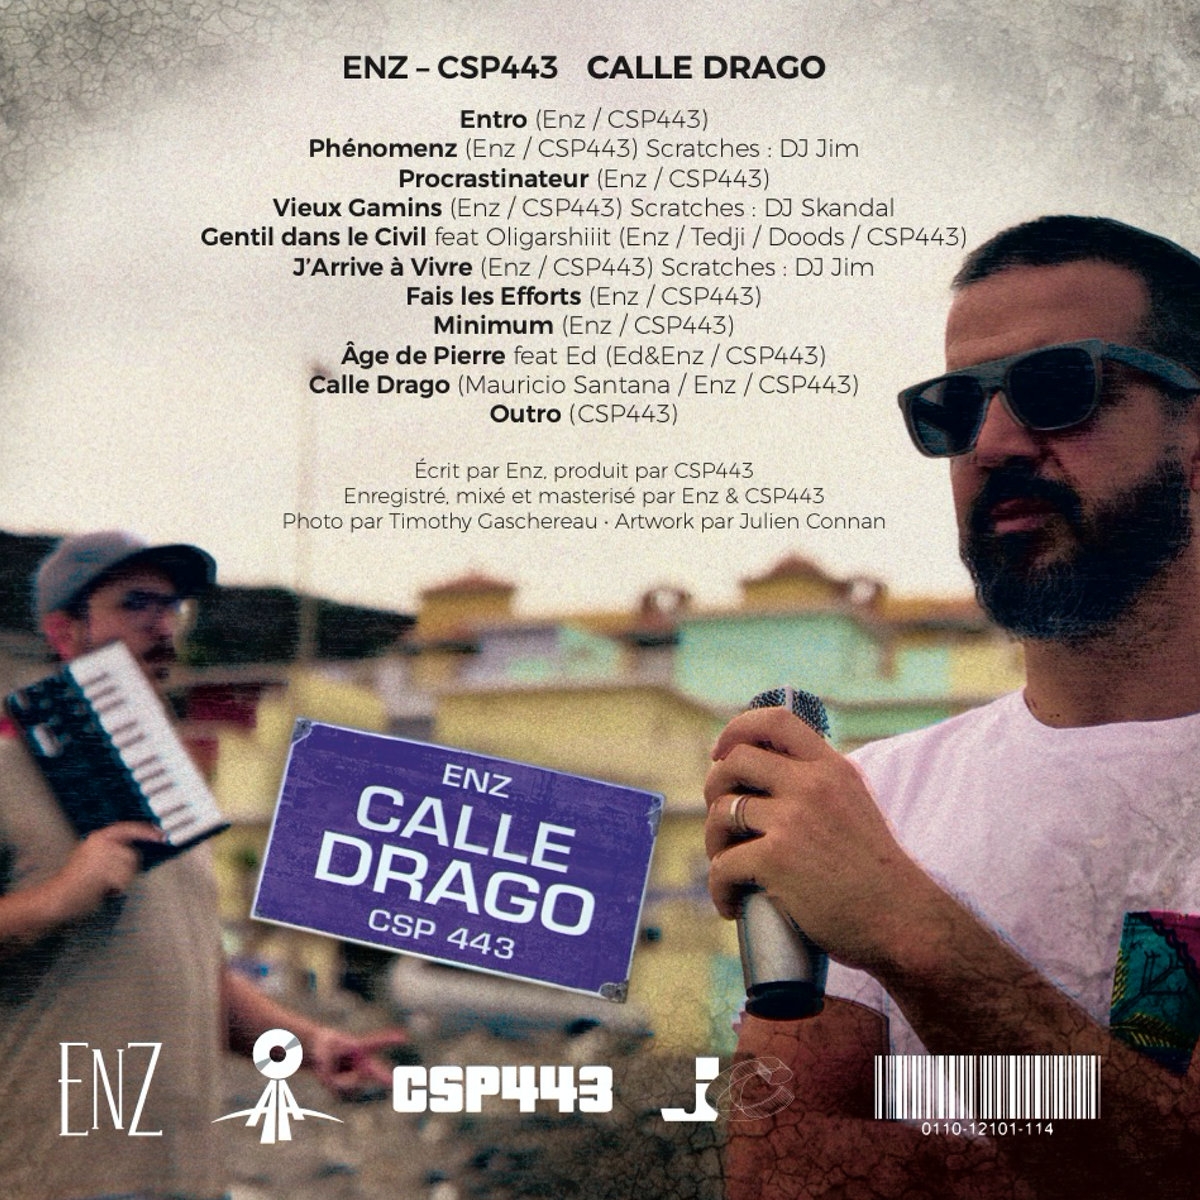 Album Cd "ENZ & CSP443 - Calle Drago" de sur Scredboutique.com